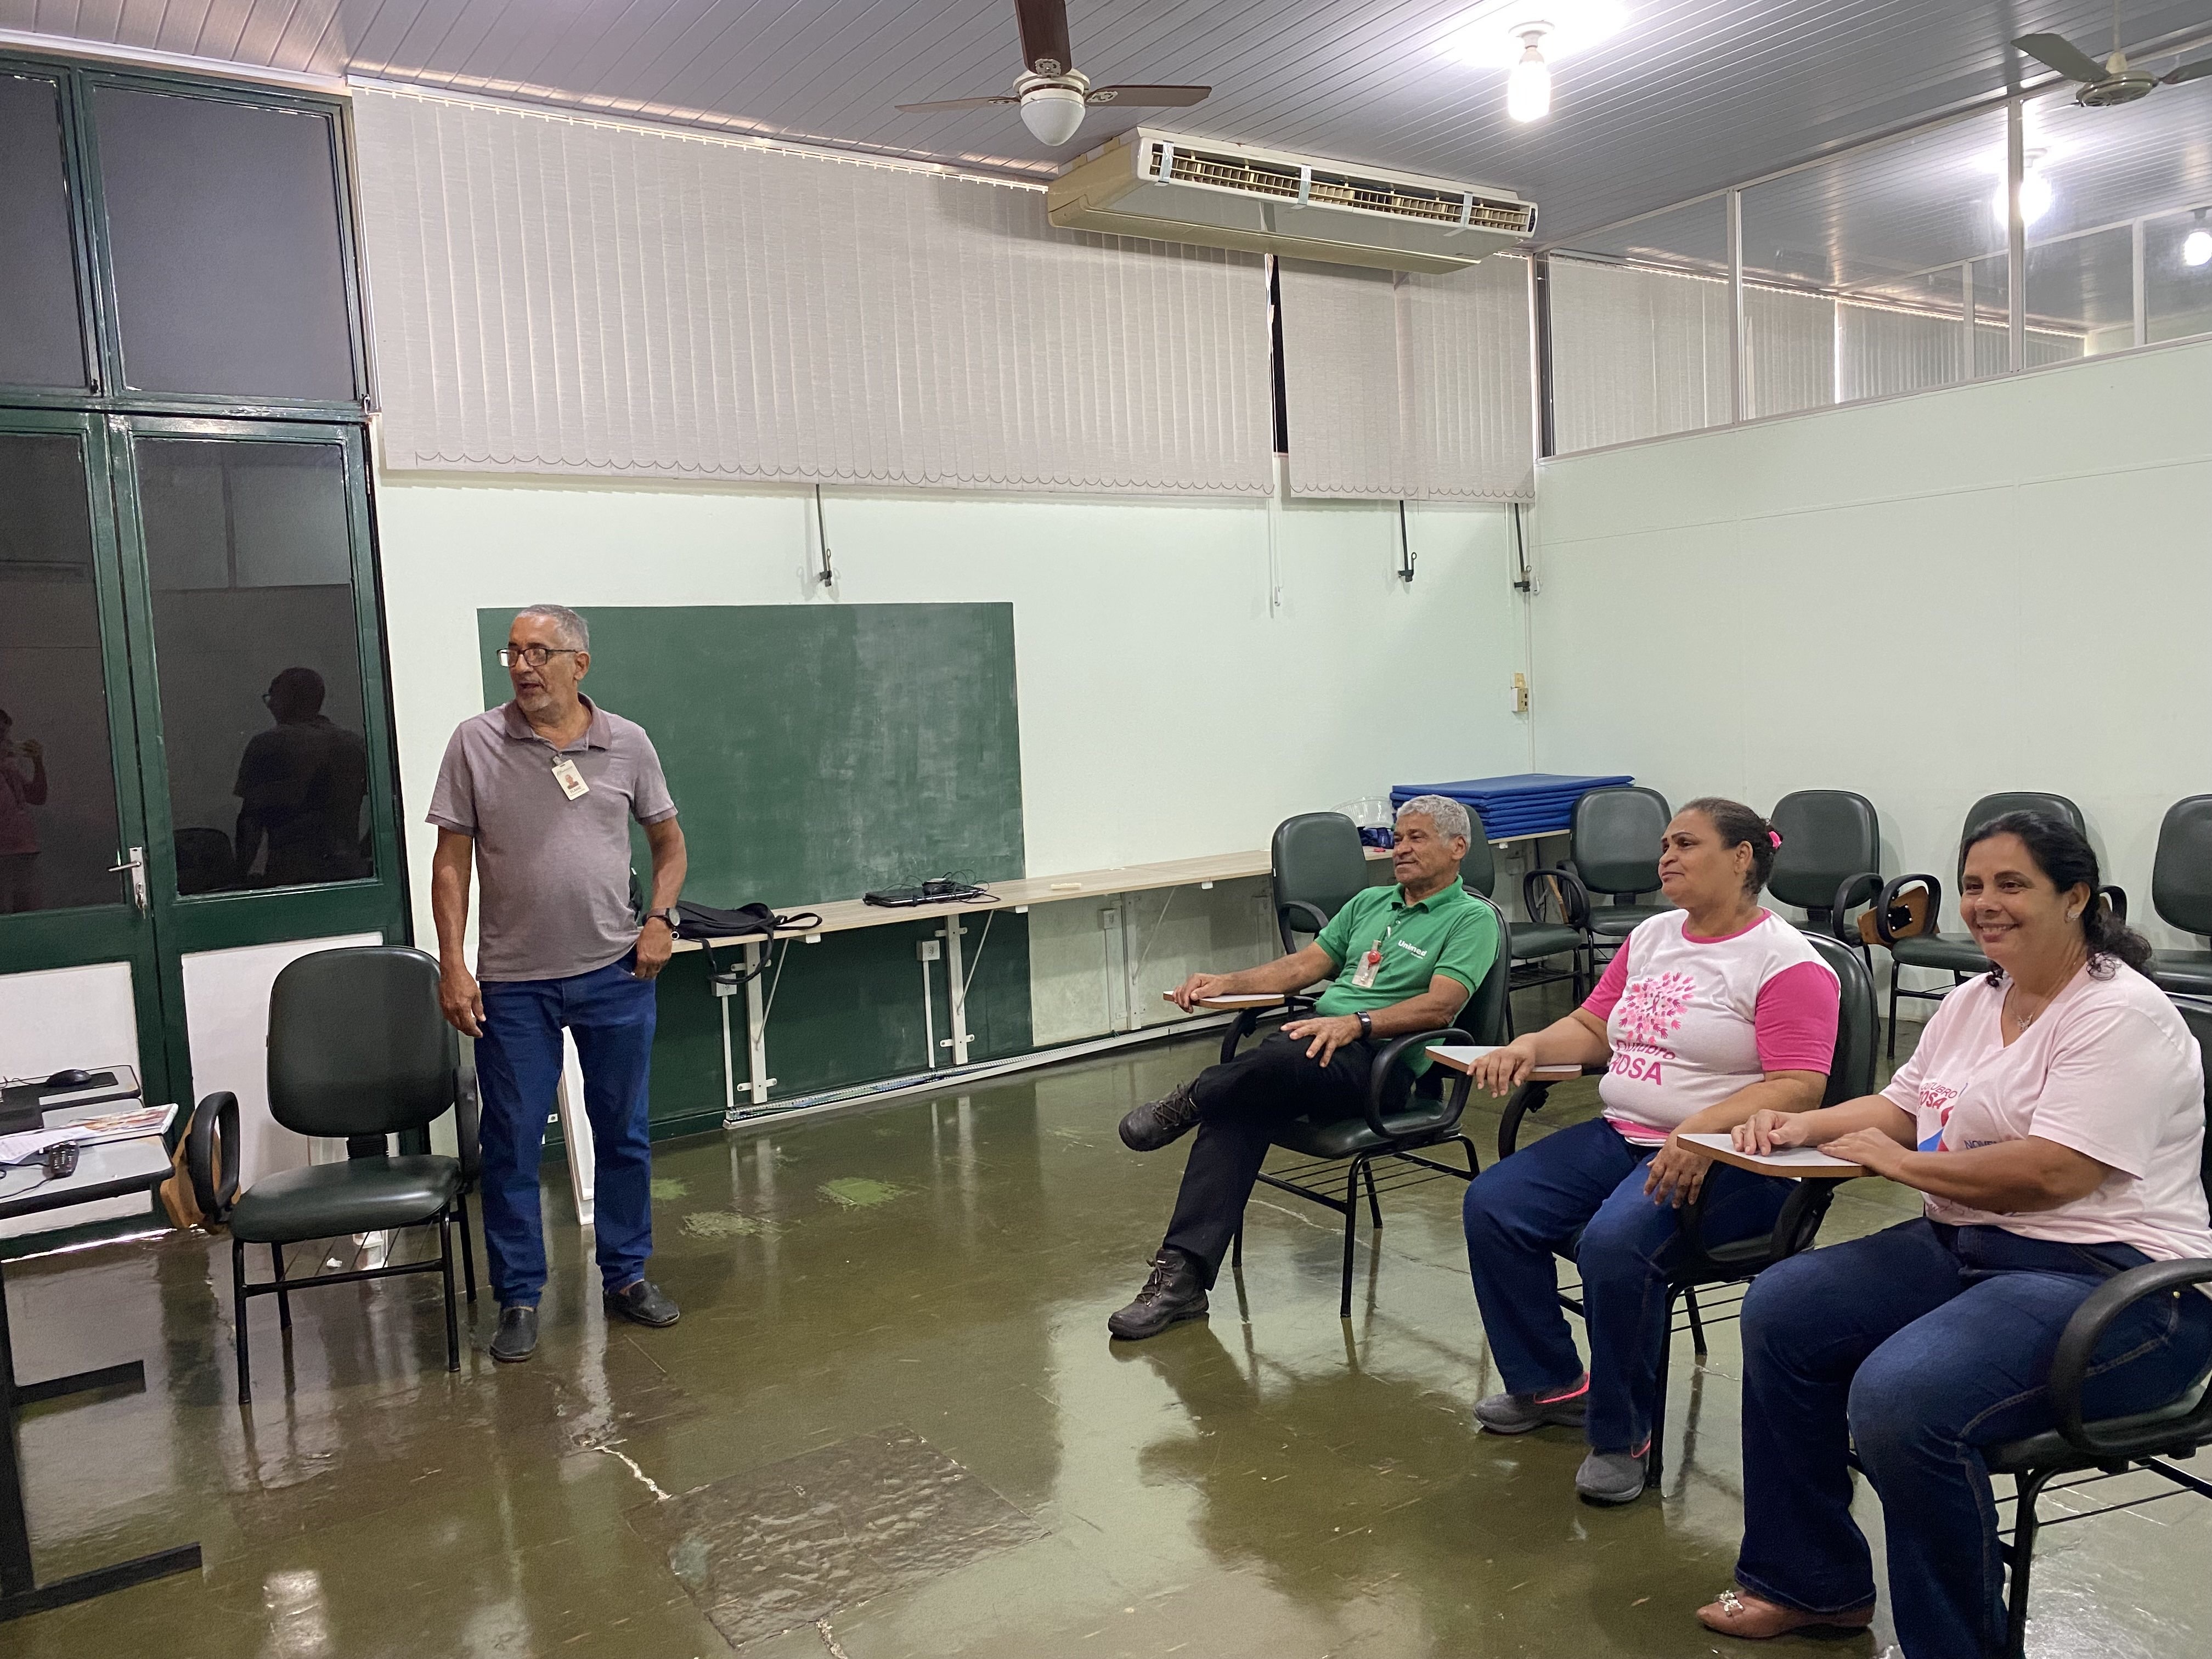 Unimed Andradina oferece treinamentos de Segurança do Trabalho